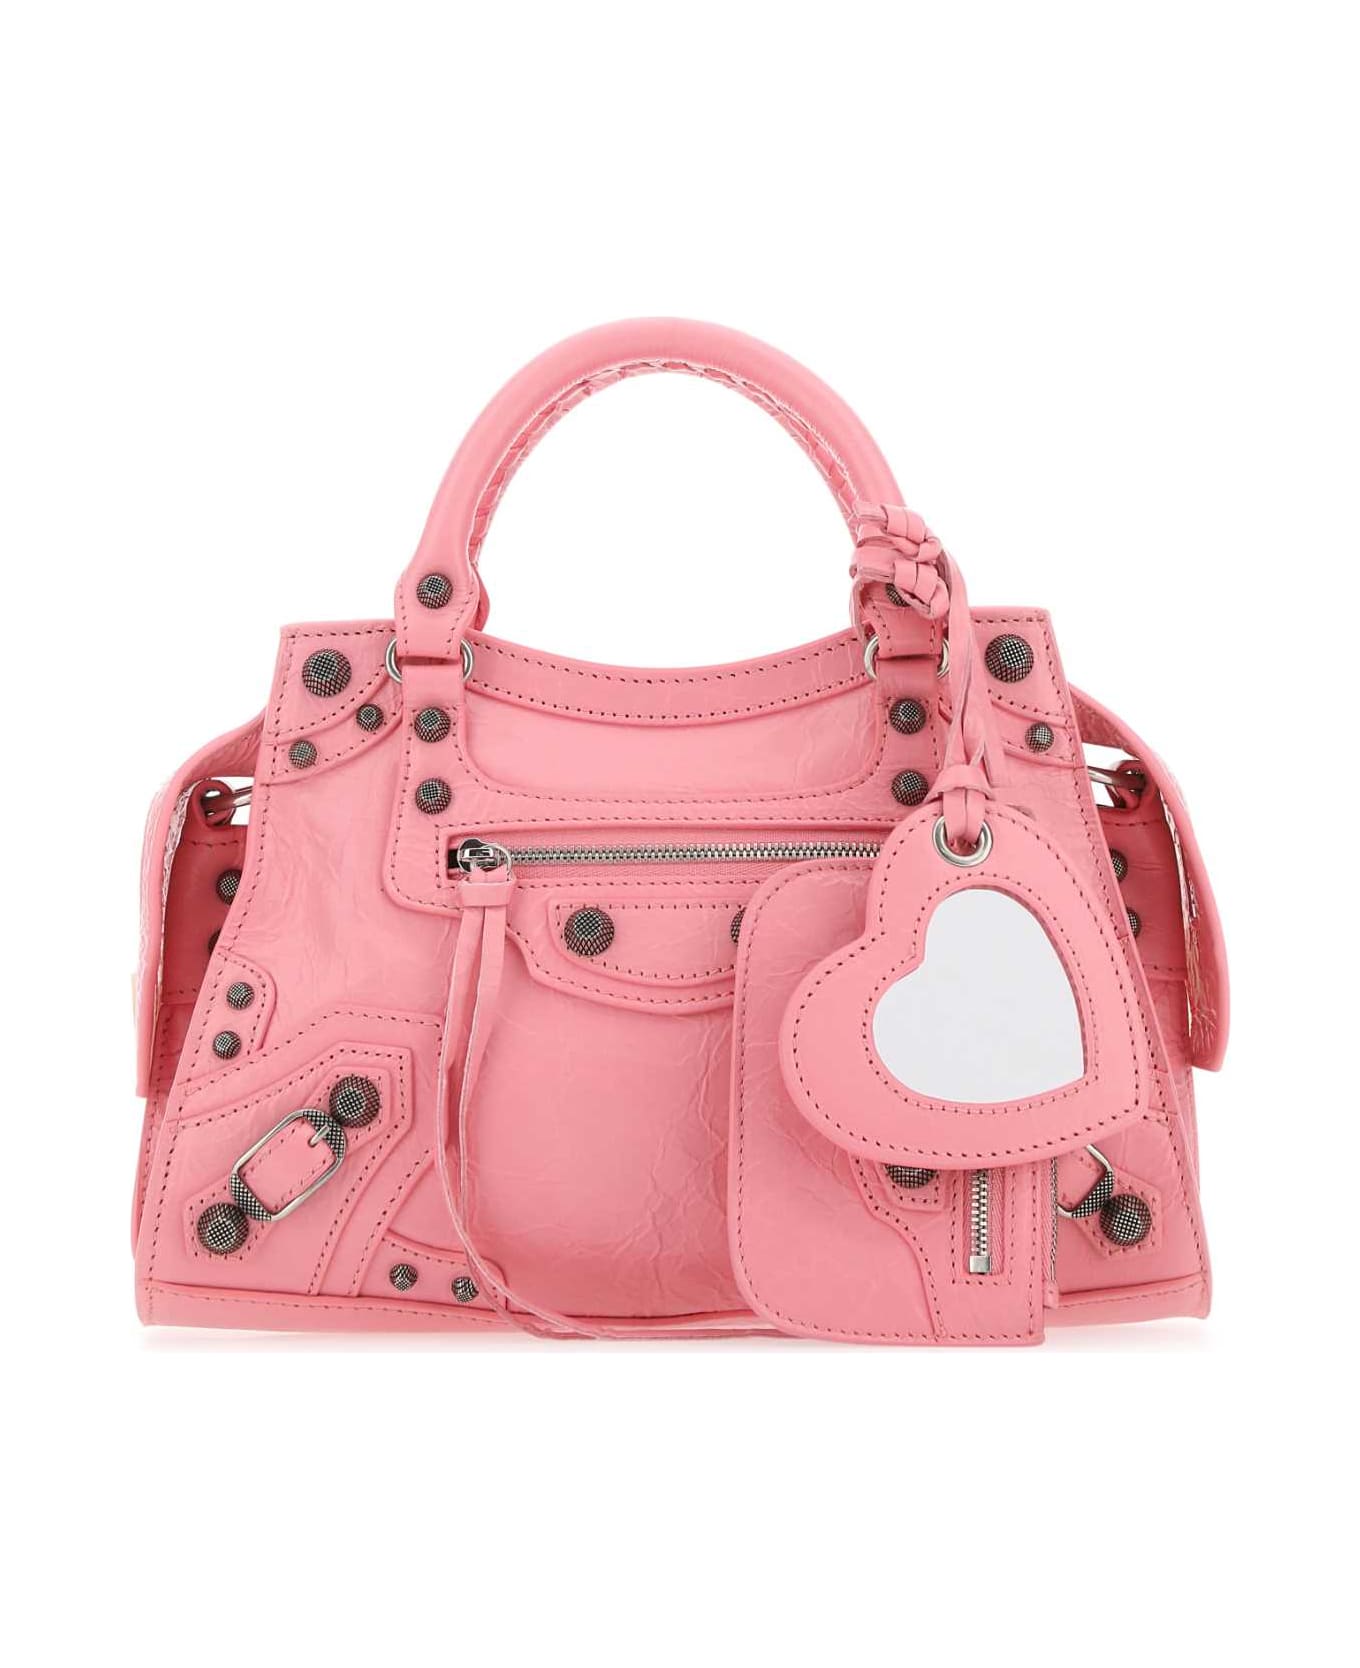 Balenciaga Pink Nappa Leather Neo Cagole Xs Handbag - SWEET PINK